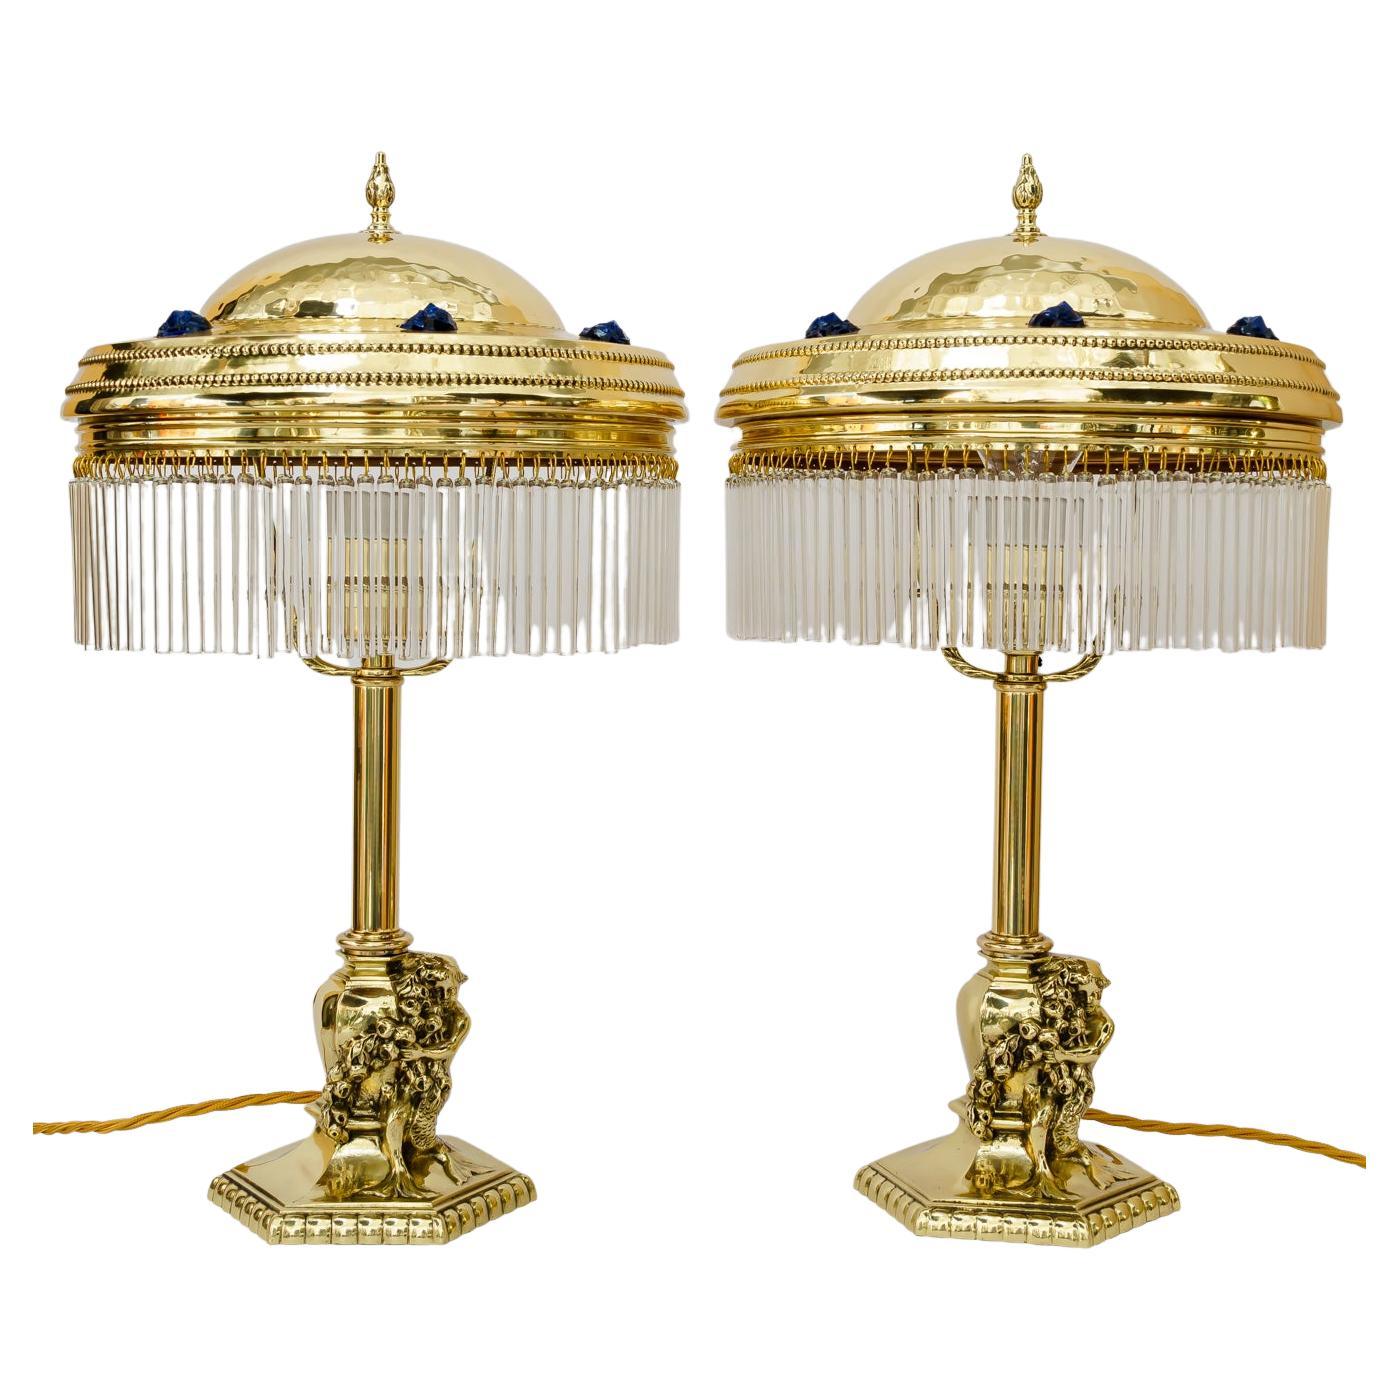 2 jugendstil table lamps vienna around 1908 For Sale